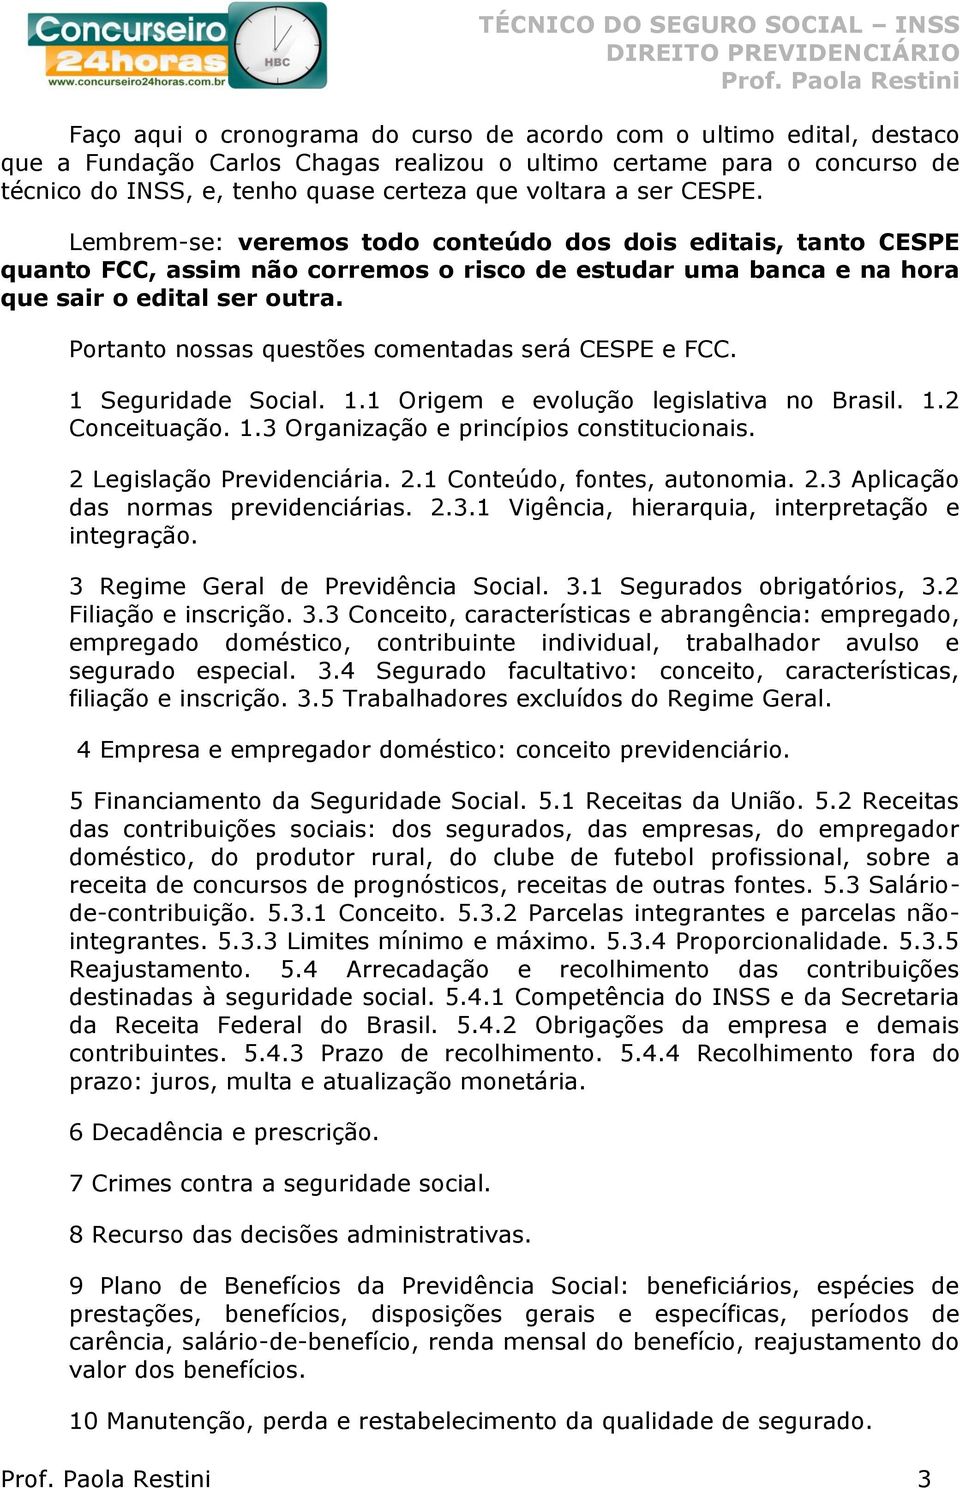 Portanto nossas questões comentadas será CESPE e FCC. 1 Seguridade Social. 1.1 Origem e evolução legislativa no Brasil. 1.2 Conceituação. 1.3 Organização e princípios constitucionais.